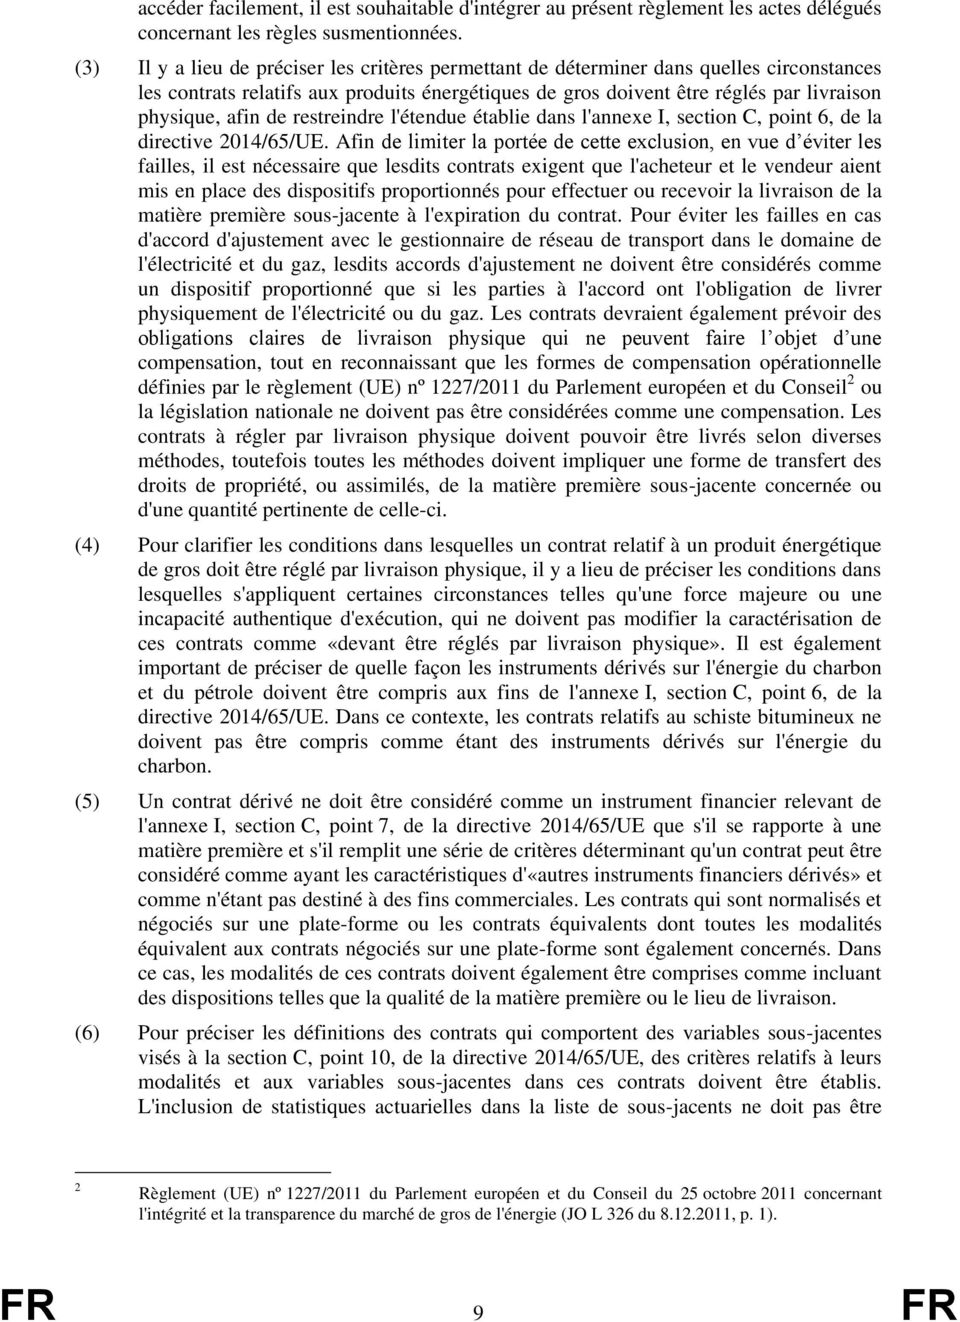 de restreindre l'étendue établie dans l'annexe I, section C, point 6, de la directive 2014/65/UE.